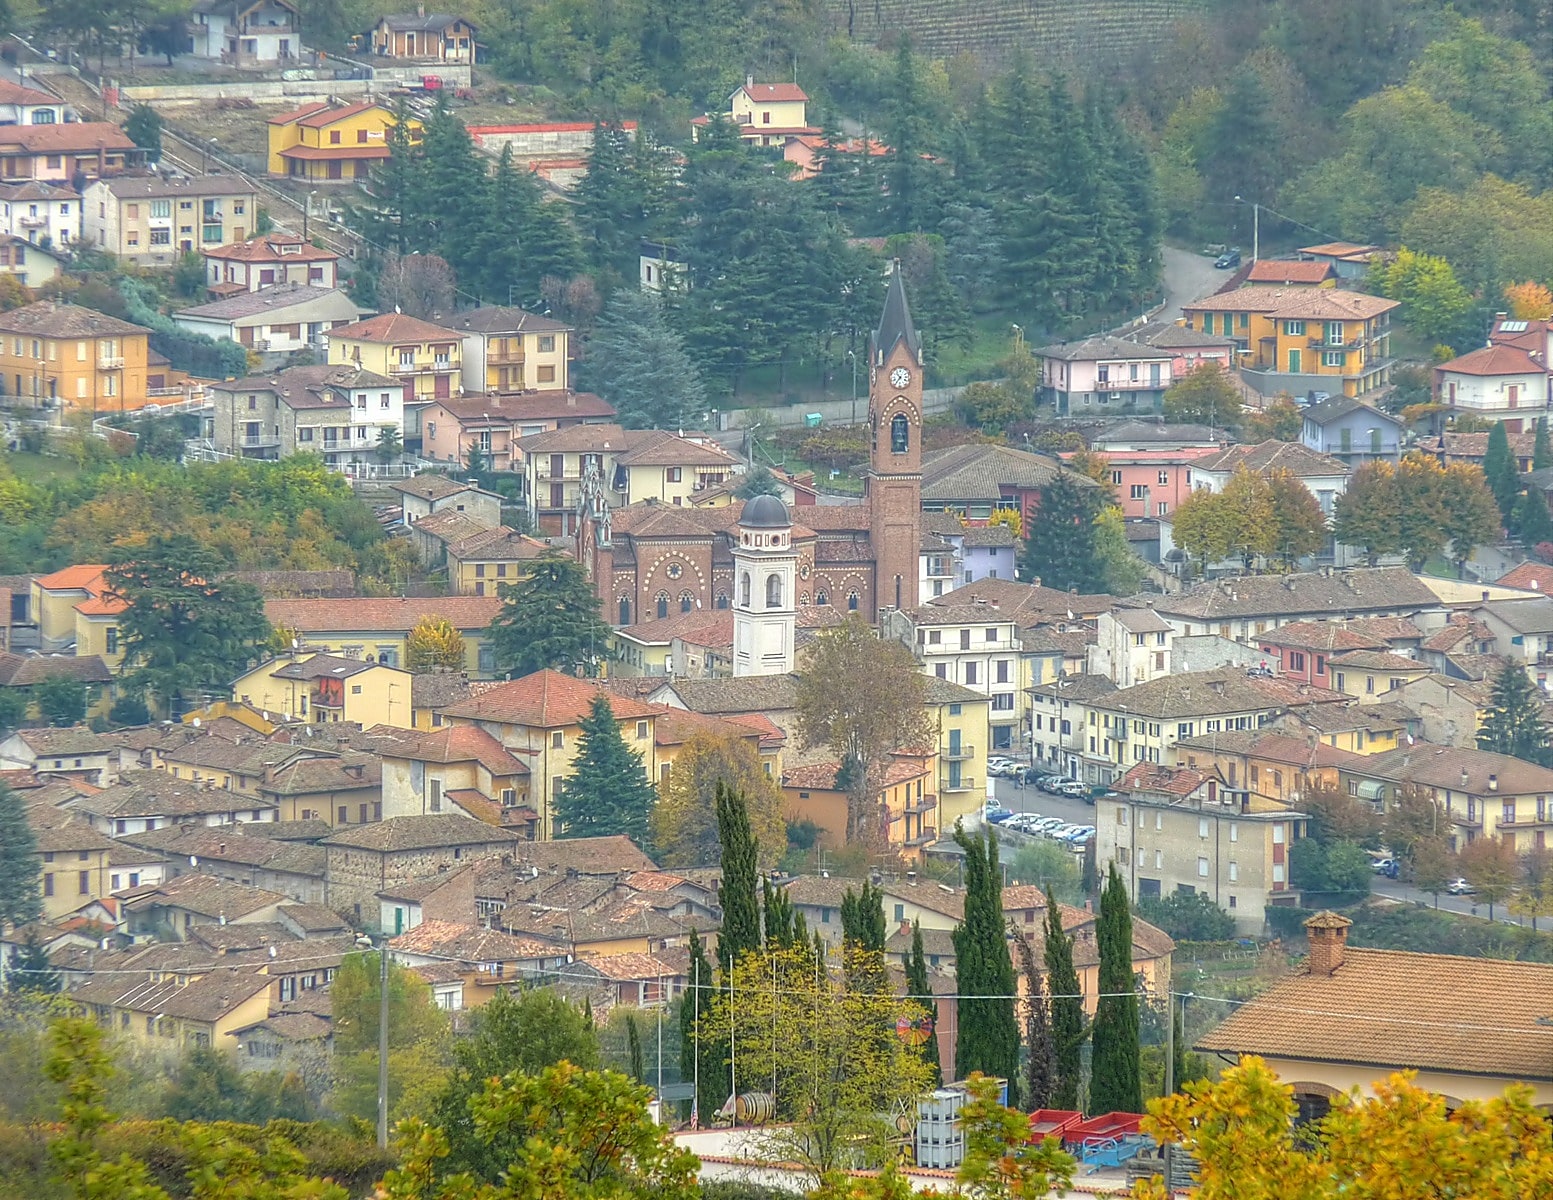 Godiasco, Italy